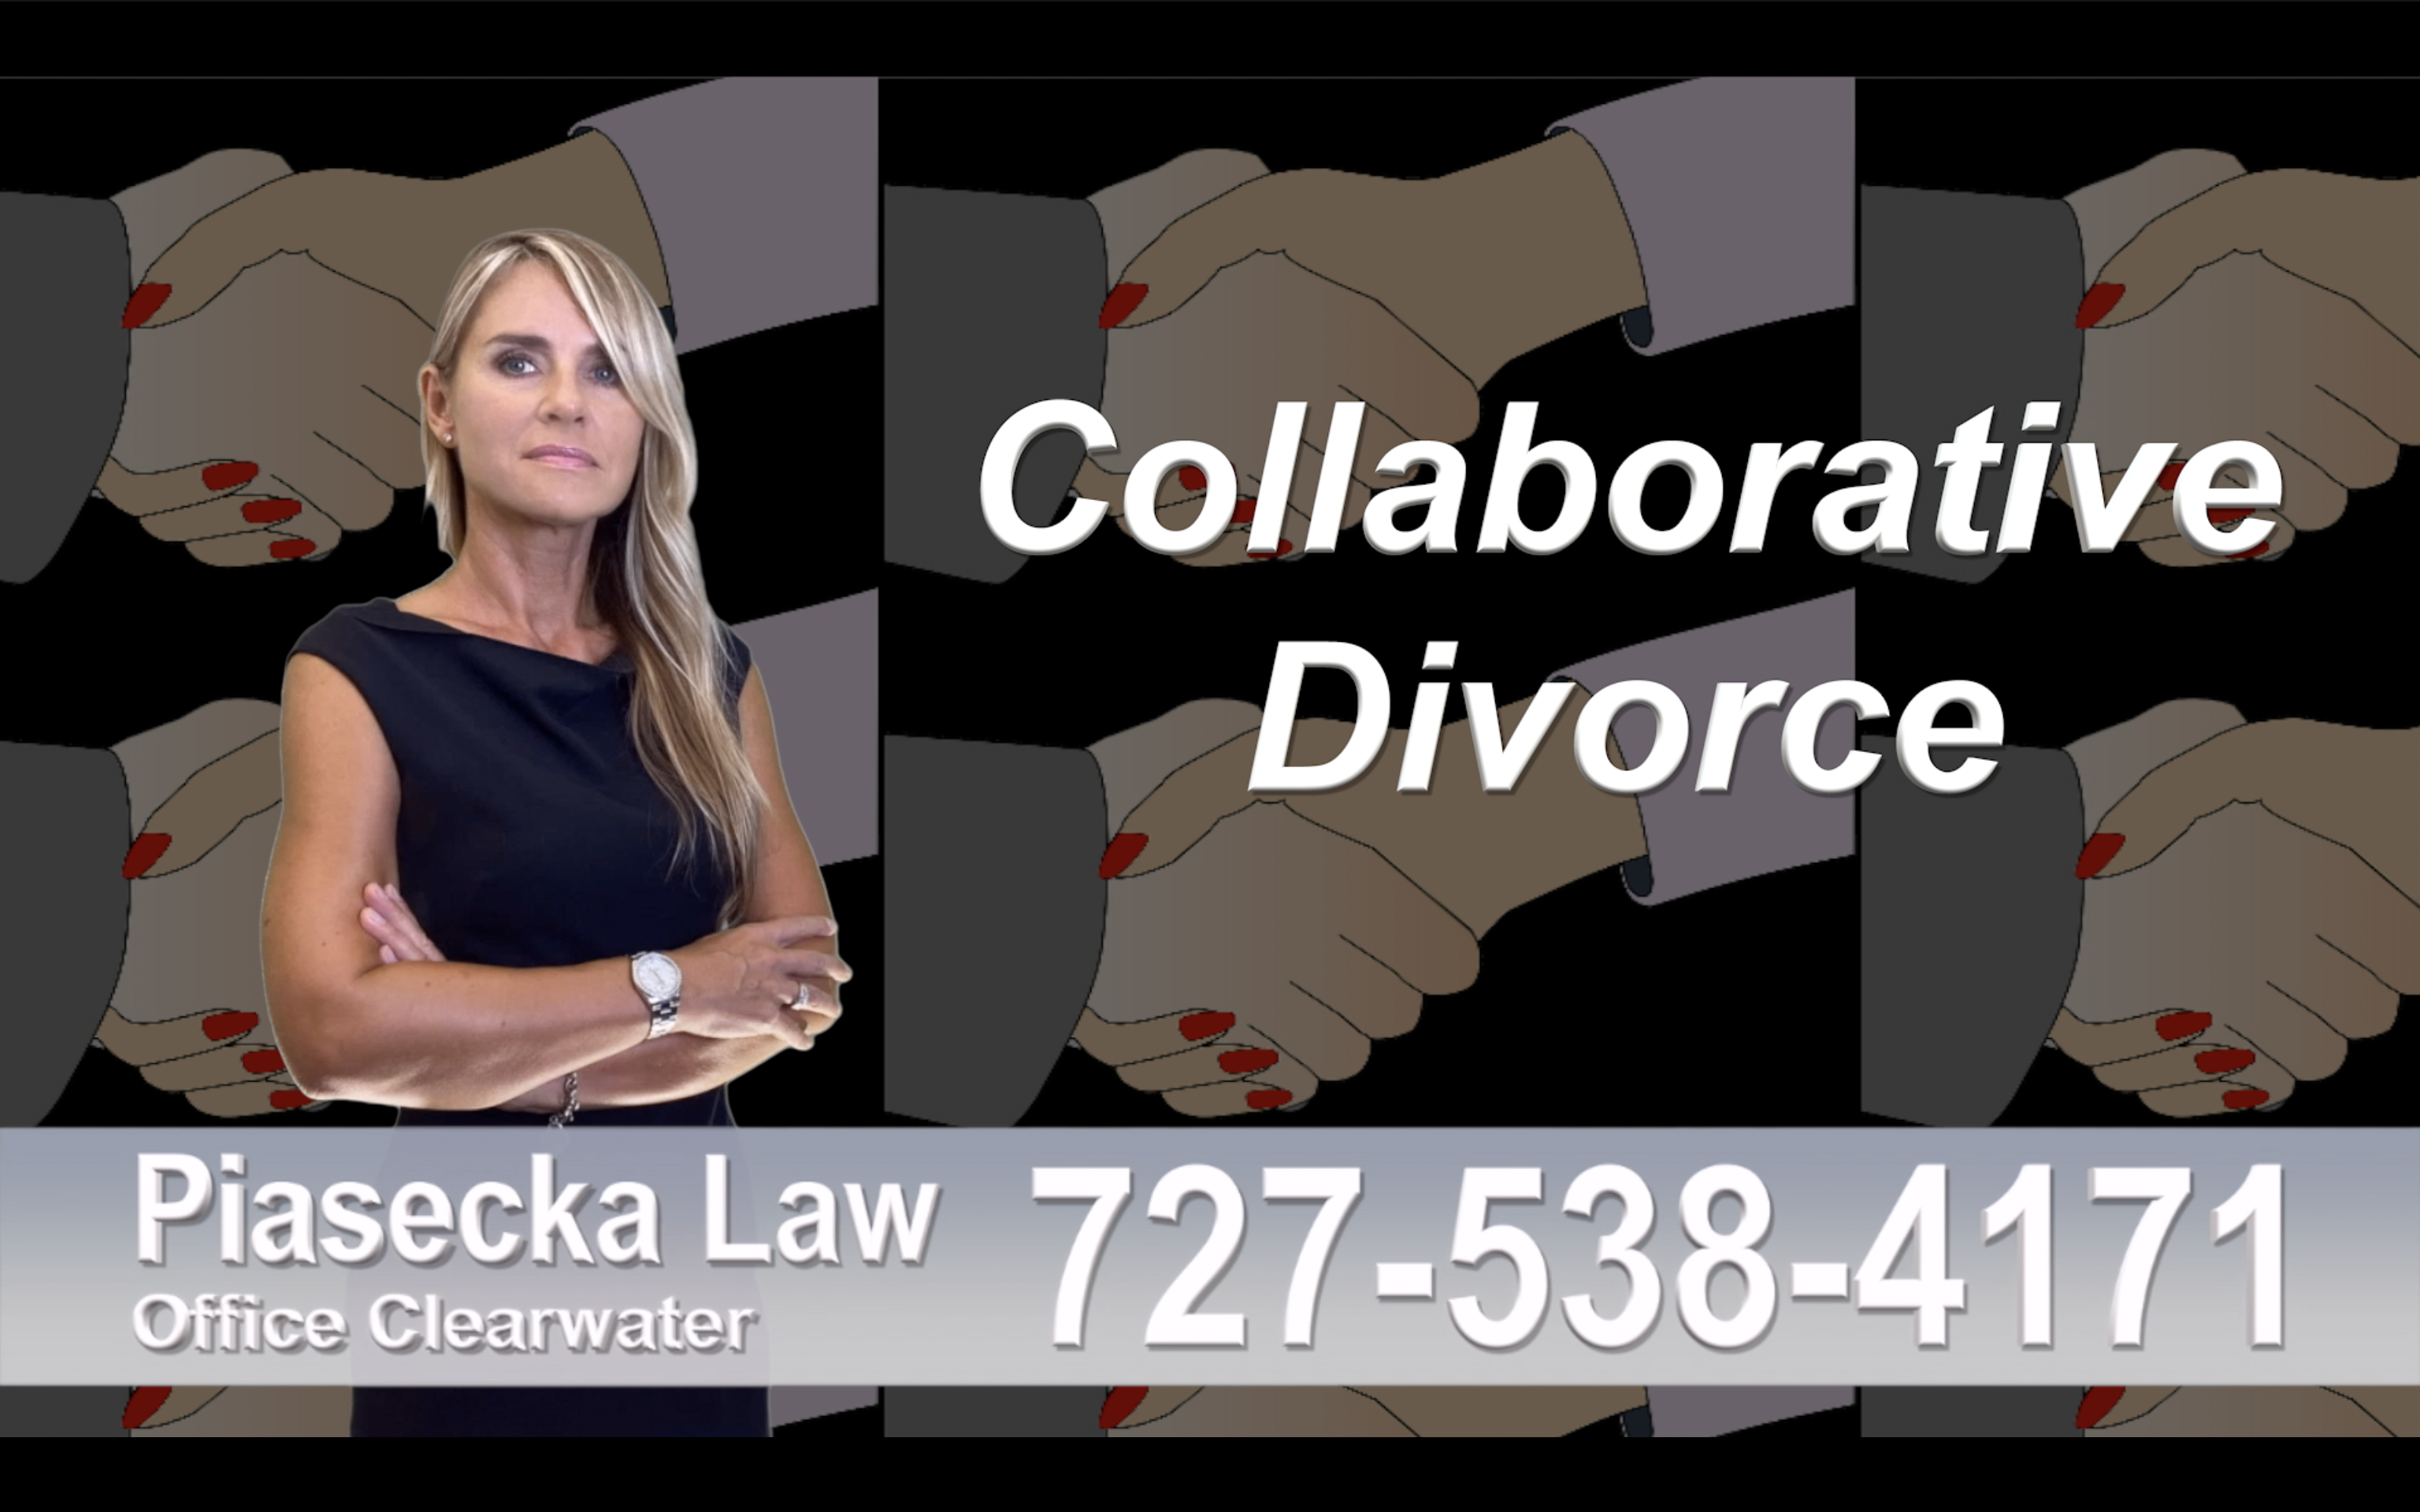 Deerfield Beach Collaborative, Divorce, Attorney, Agnieszka, Piasecka, Prawnik, Rozwodowy, Rozwód, Adwokat, divorce, uncontested, Najlepszy, Best, divorce, attorney